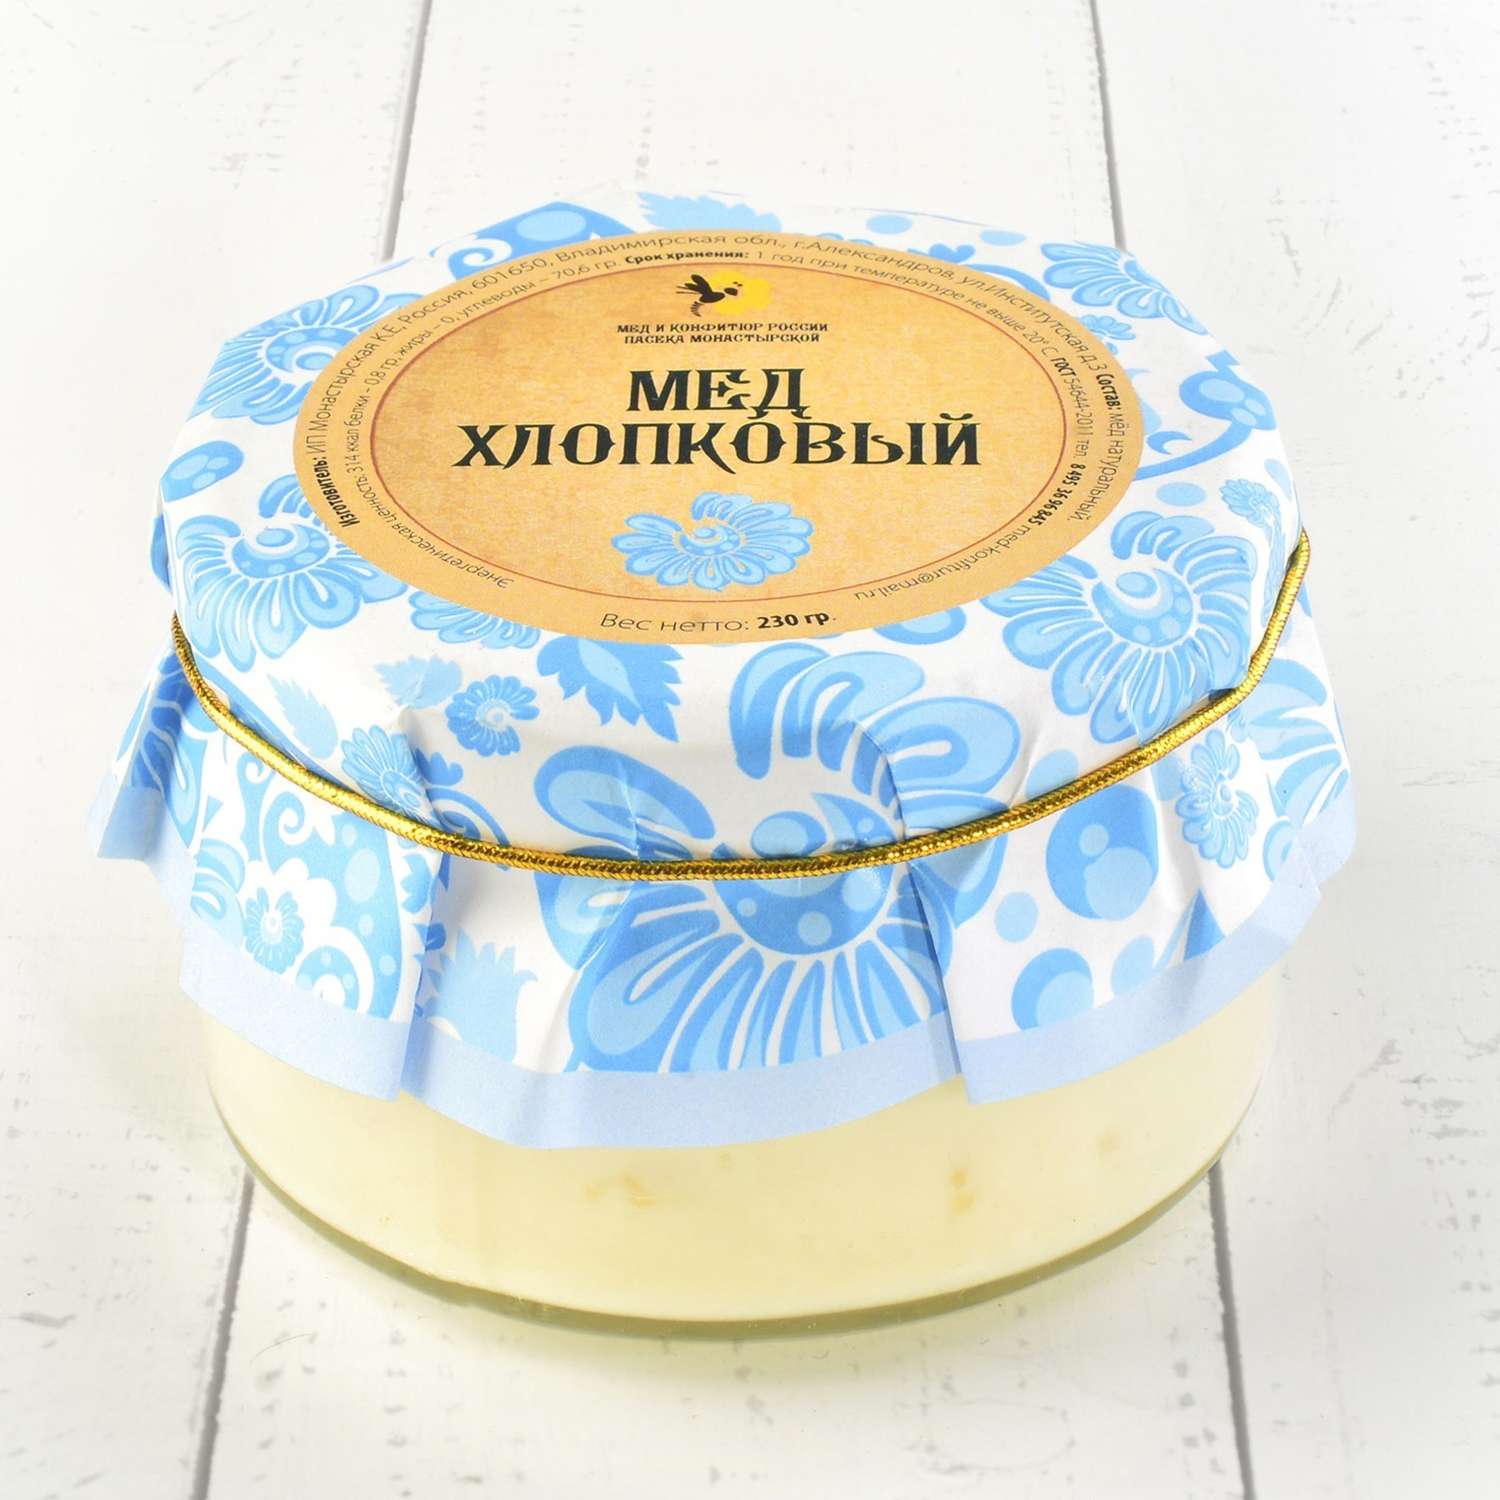 Крем-мёд Мед и Конфитюр хлопковый 230 гр - фото 1